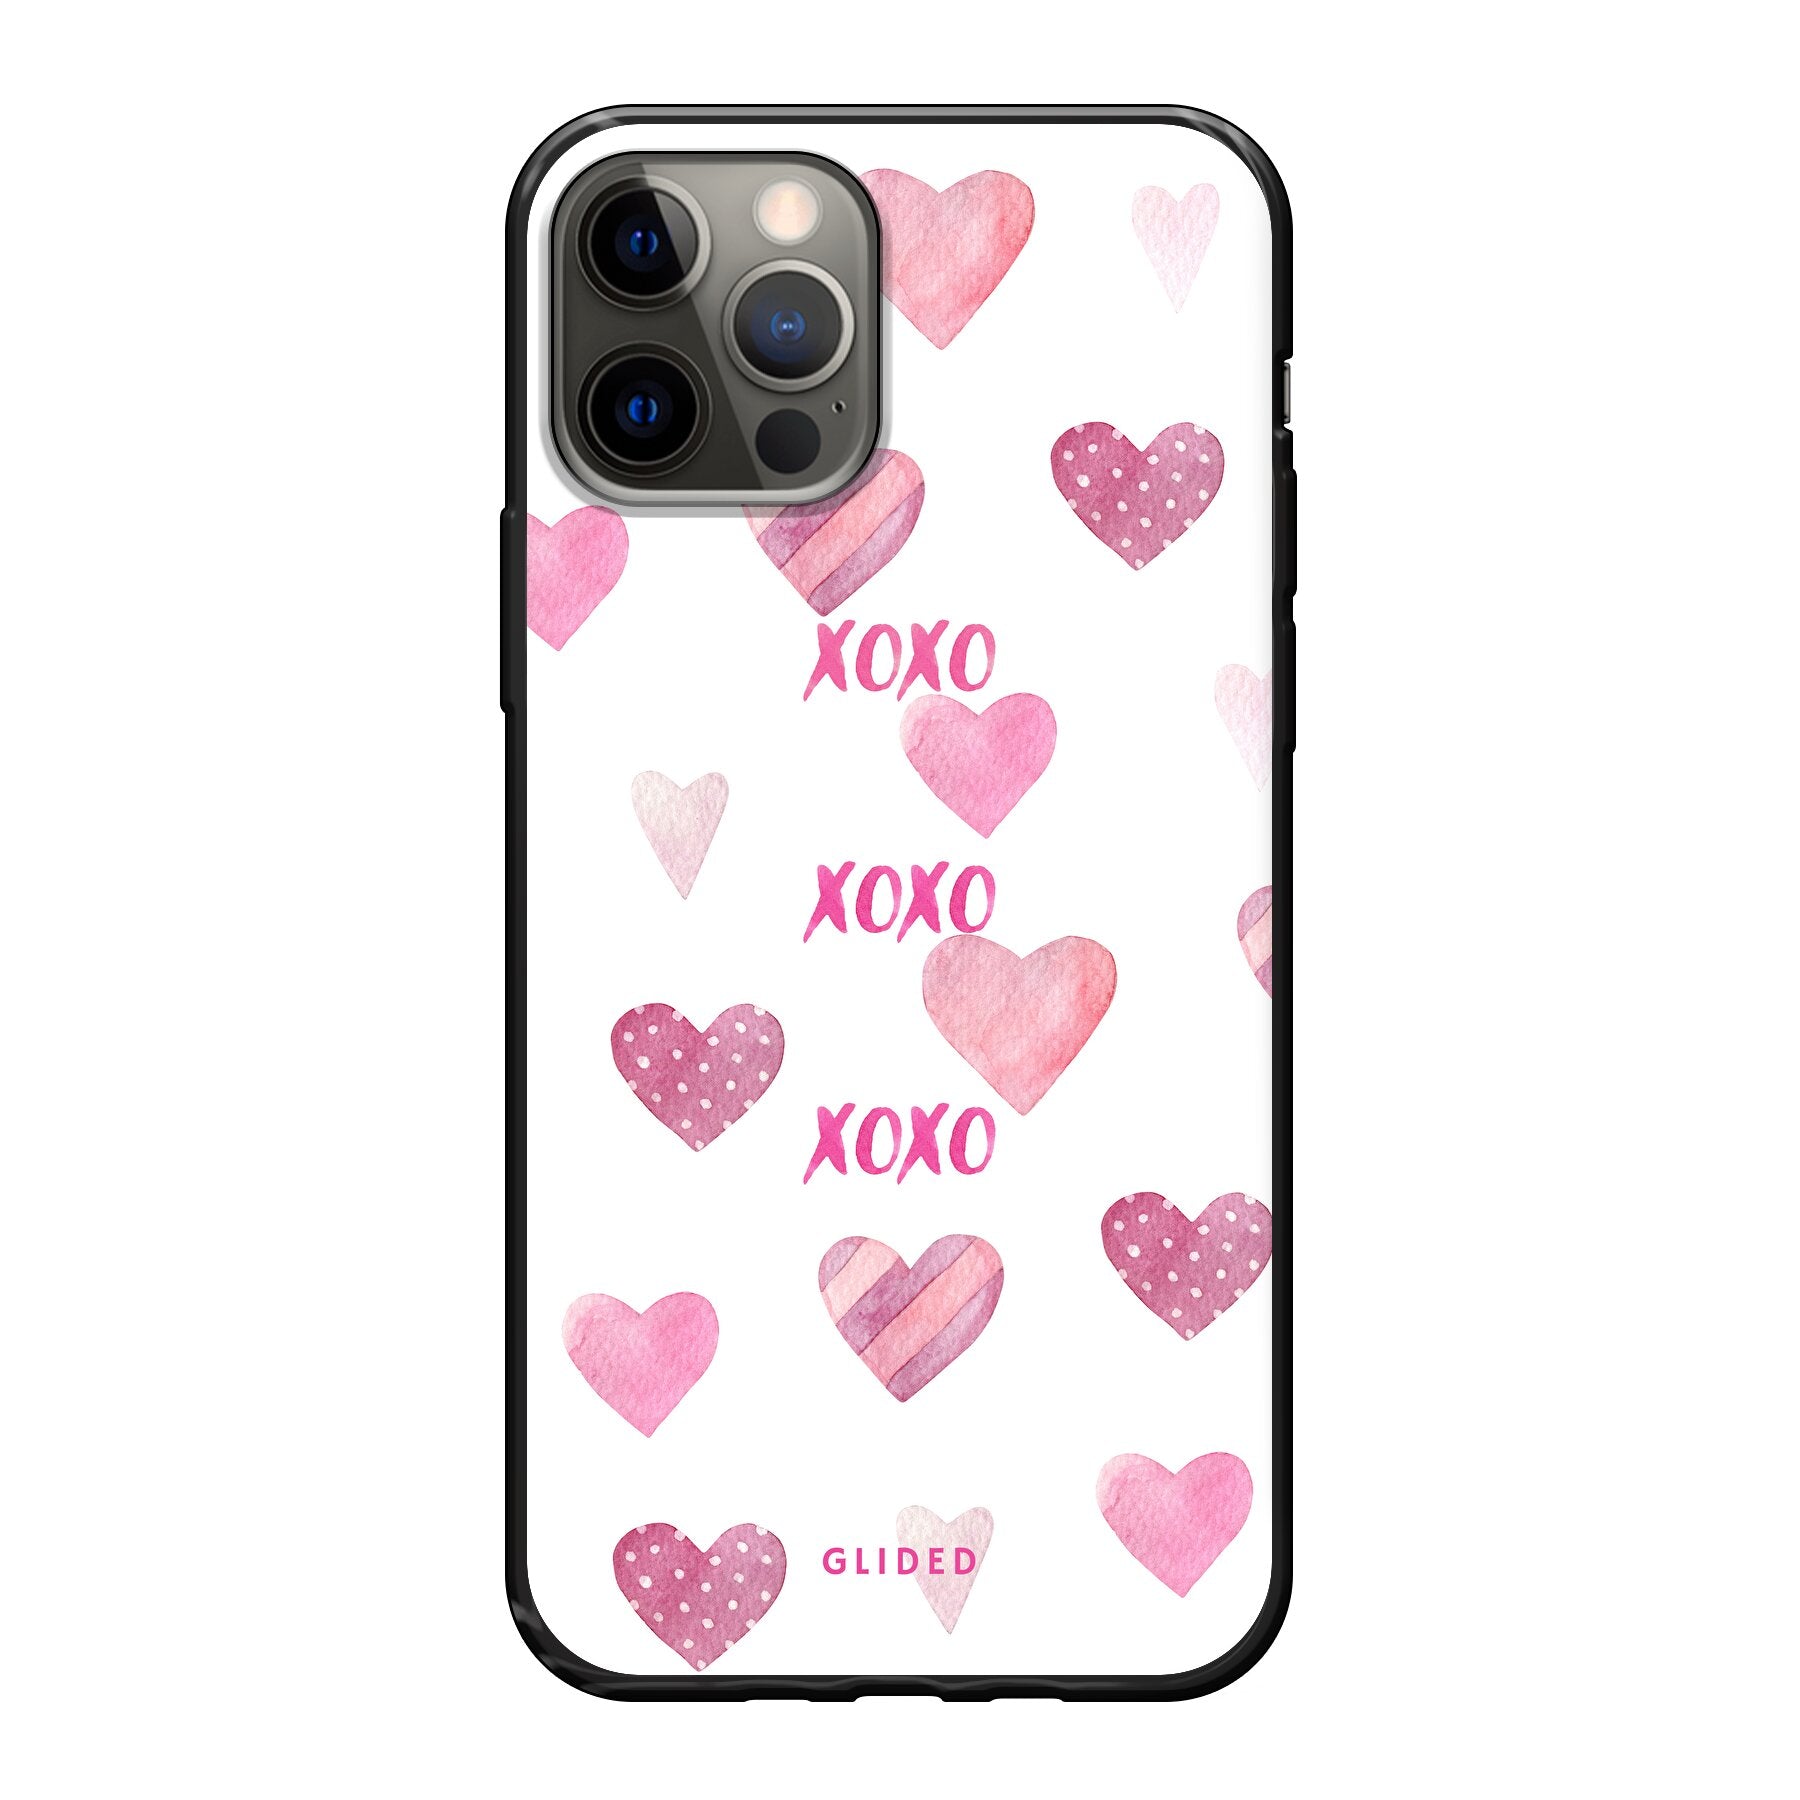 Xoxo - iPhone 12 - Soft case